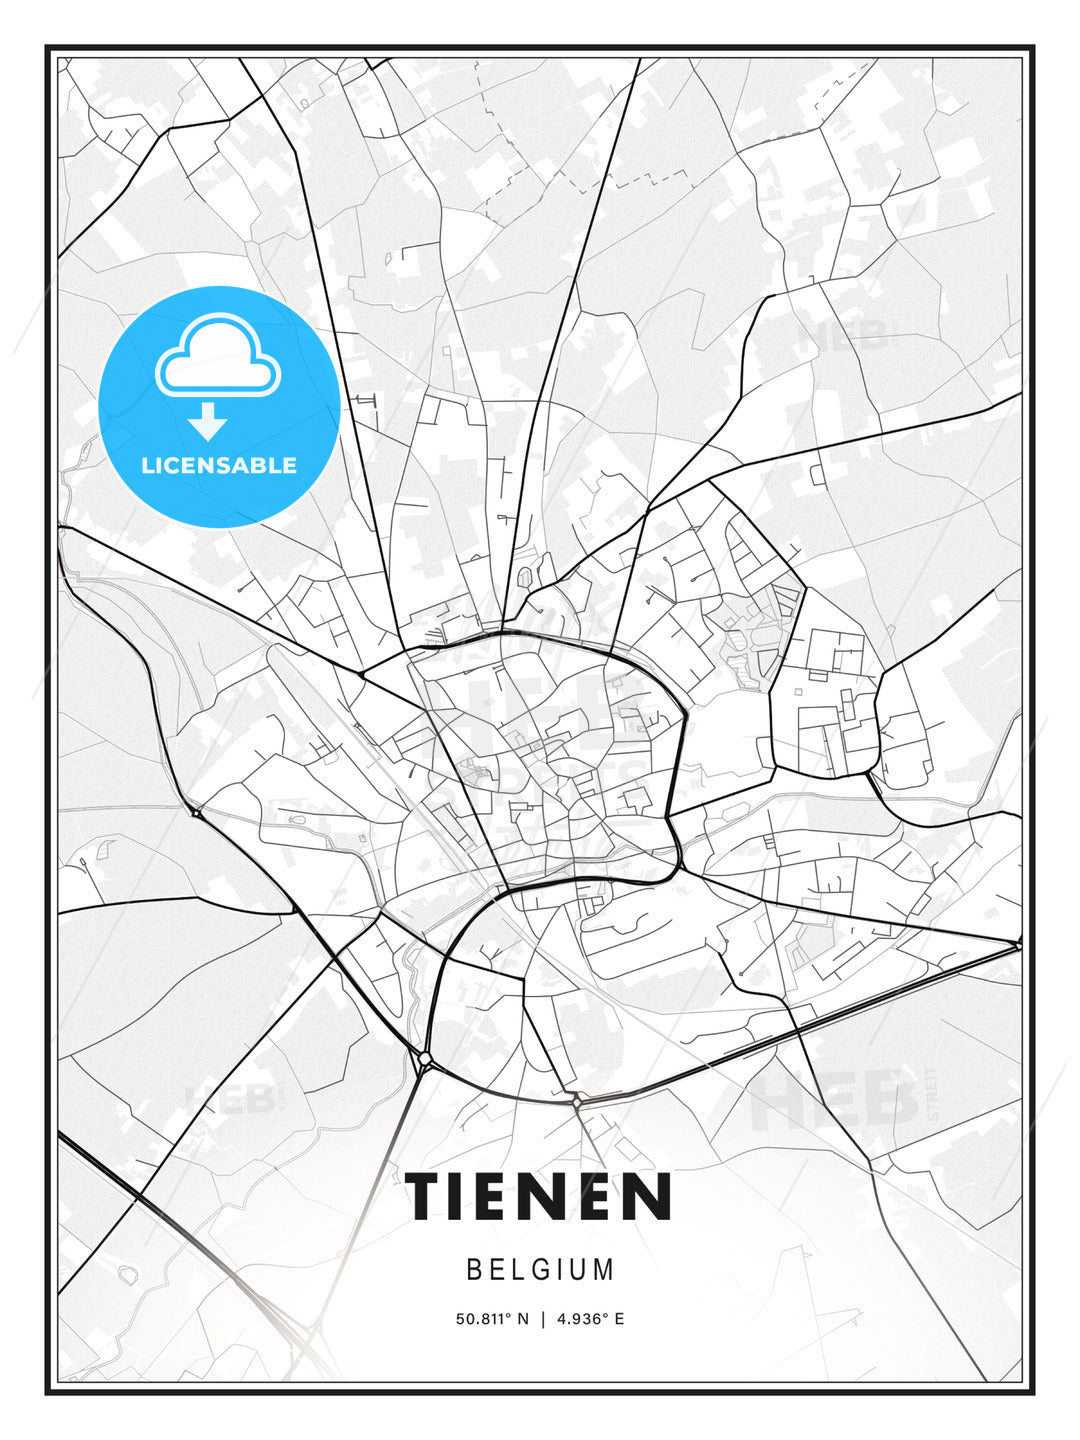 Tienen, Belgium, Modern Print Template in Various Formats - HEBSTREITS Sketches